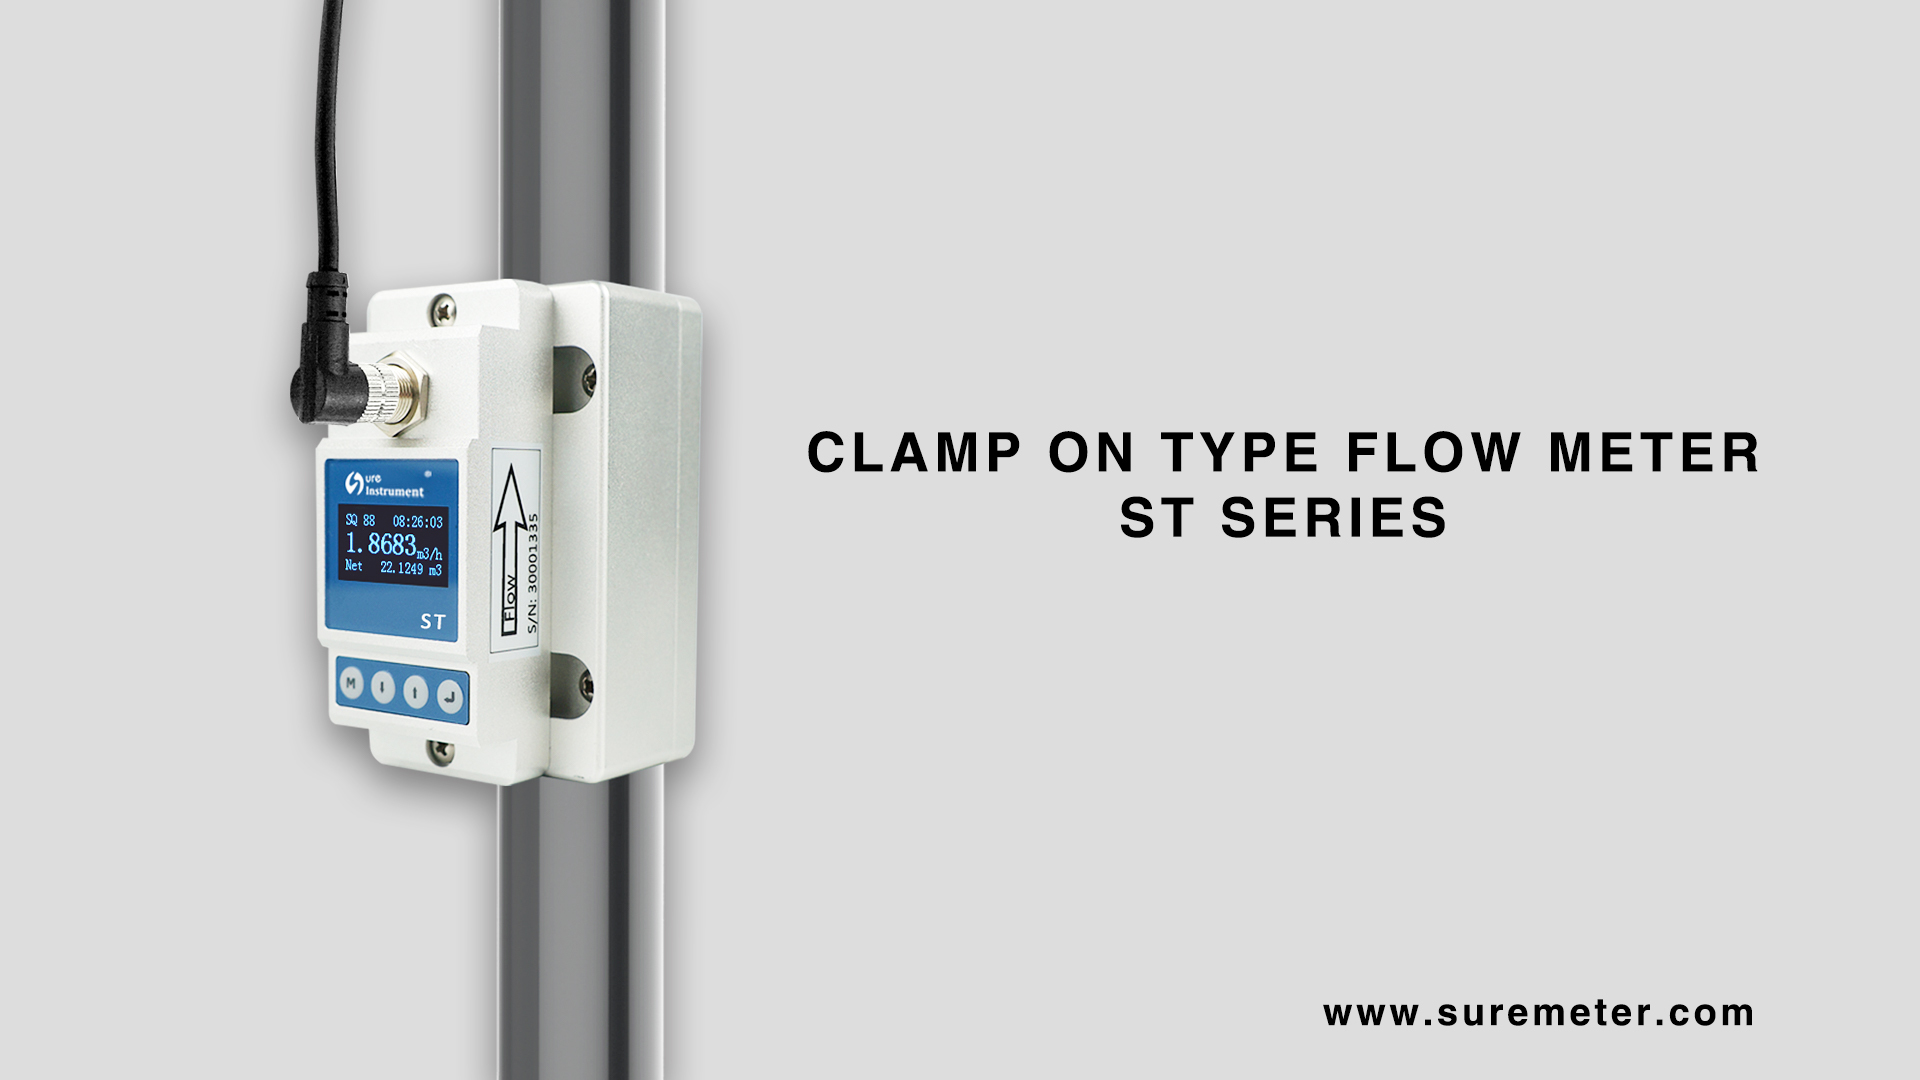 ST series clamp on type flow meter